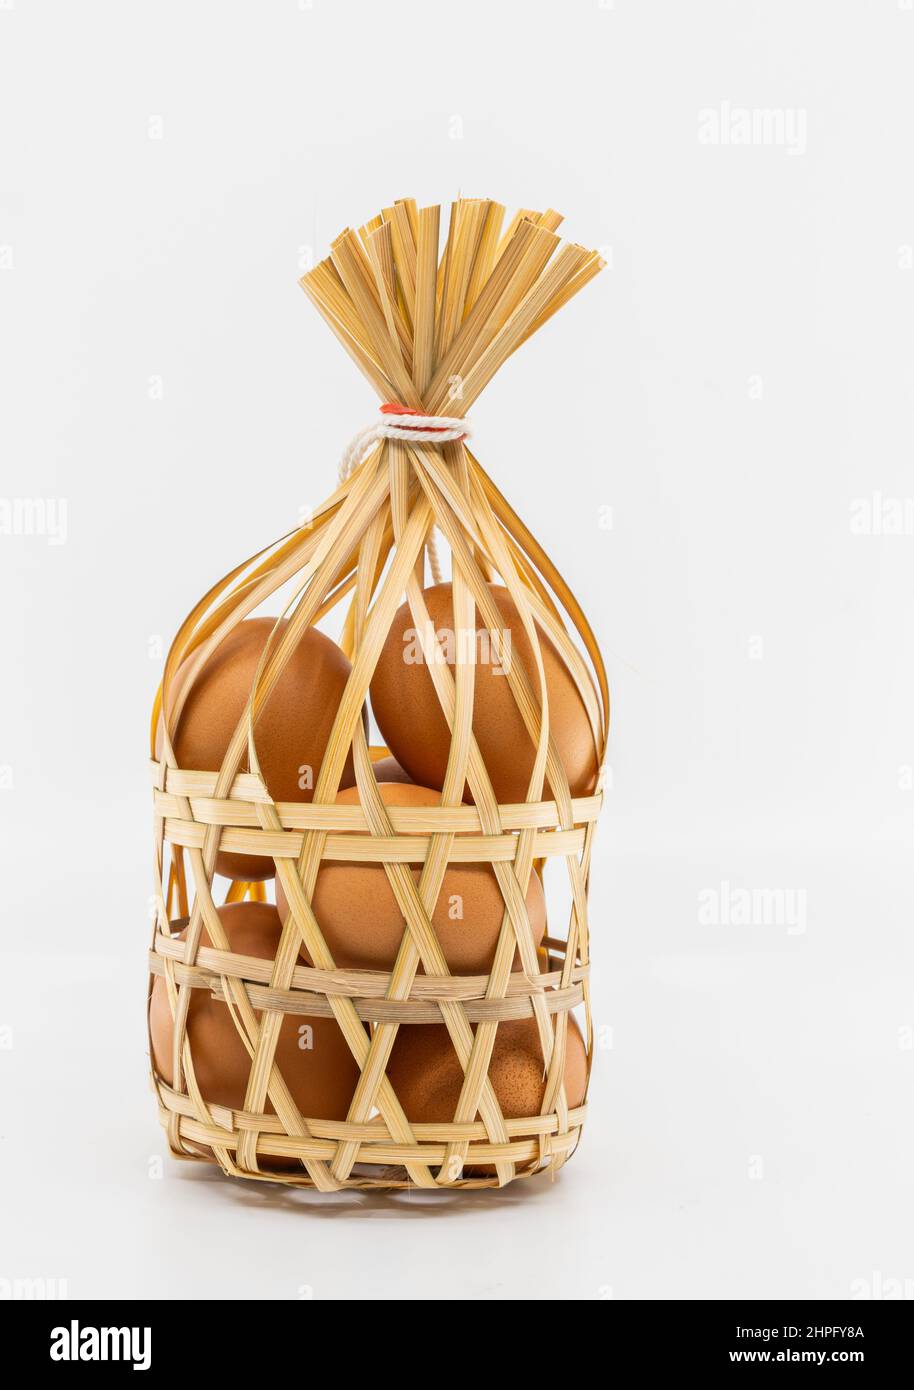 Huevos de pollo marrón orgánico aislados en una cesta redonda de mimbre de bambú sobre fondo blanco, vista frontal de la imagen. El concepto para una alimentación saludable. Foto de stock